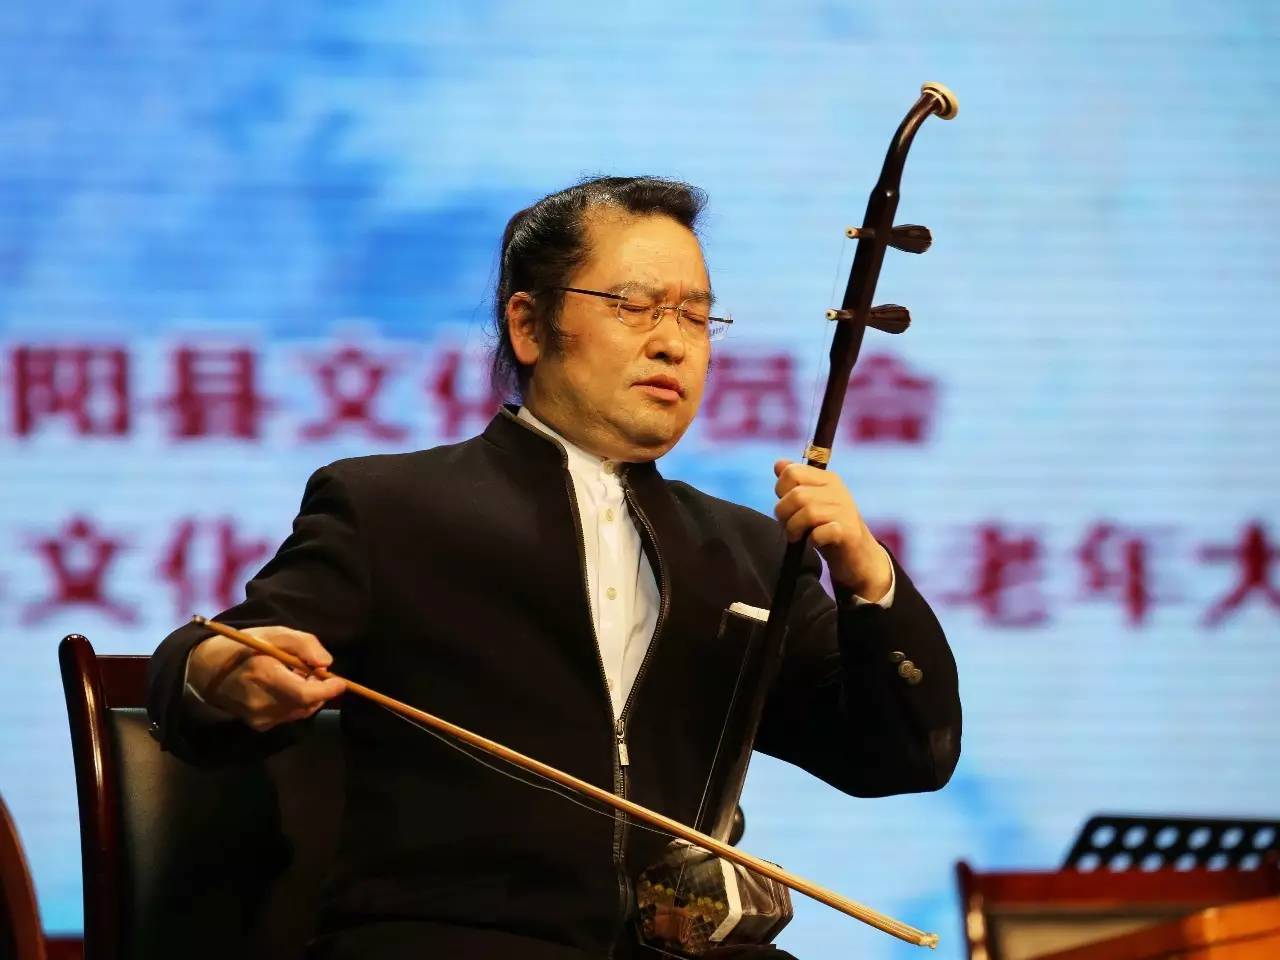 既有蒙古风格的音阶节奏,又有同汉族音乐中常用的装饰音,全国二胡名家